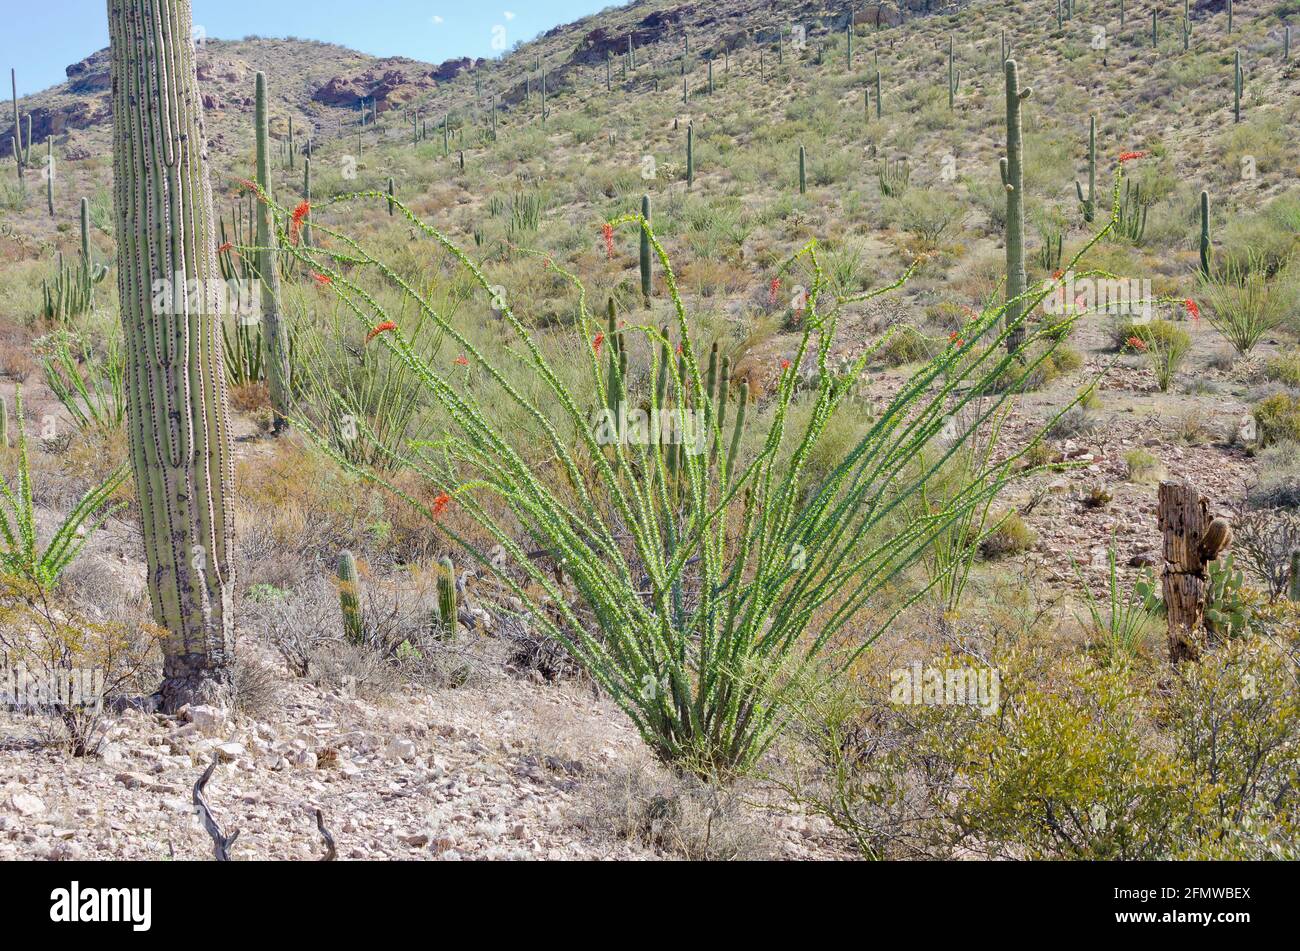 Orgue Pipe Cactus National Monument , une réserve de biosphère de l'UNESCO située à l'extrême sud de l'Arizona qui partage une frontière avec le Mexique Banque D'Images